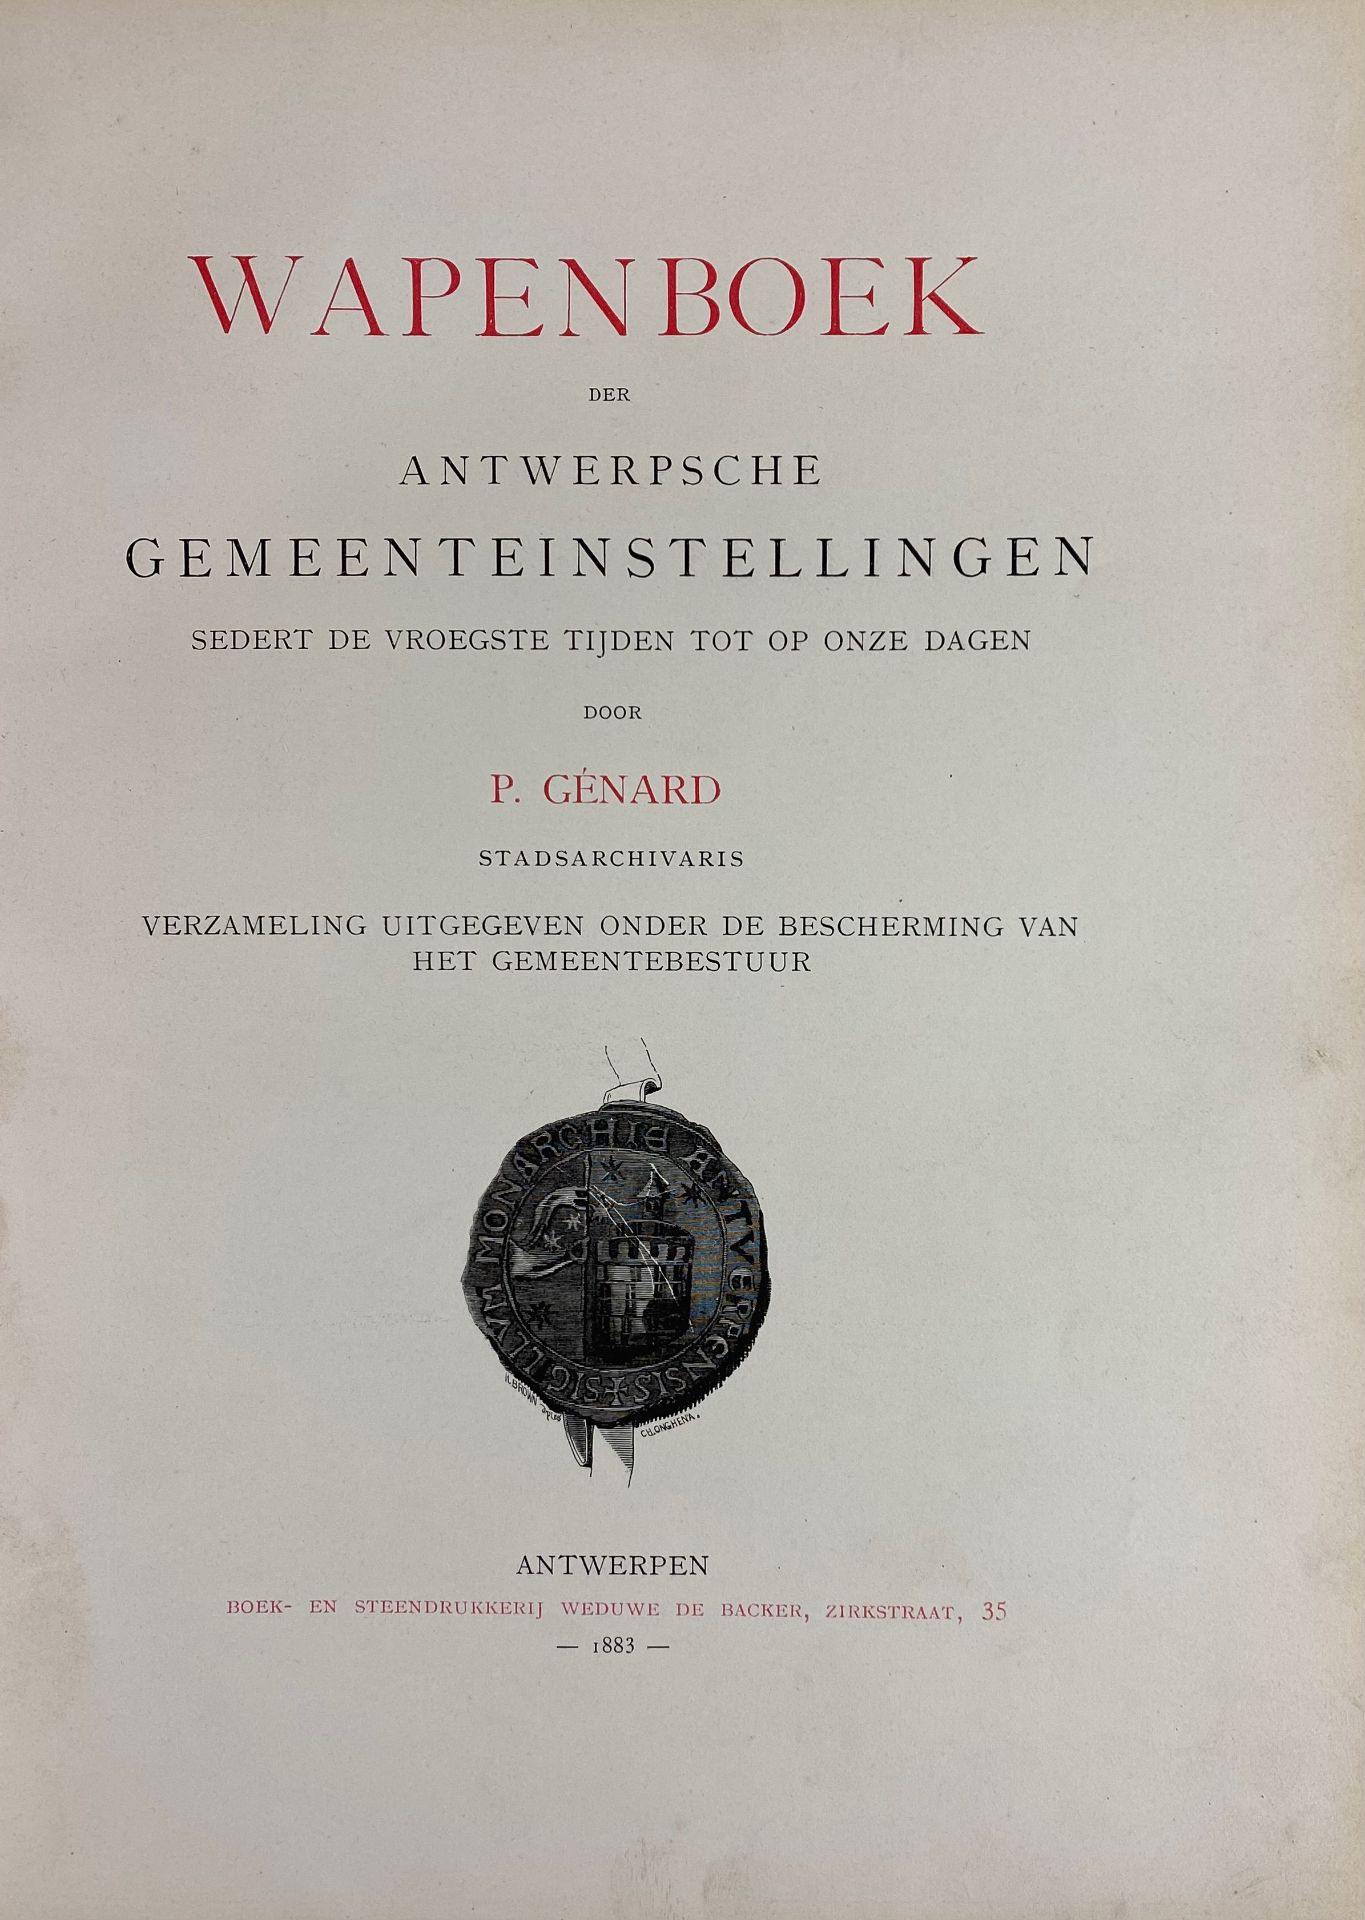 HERALDRY -- GÉNARD, P. Wapenboek der Antwerpsche gemeenteinstellingen sedert de vroegste tijden tot - Bild 2 aus 3